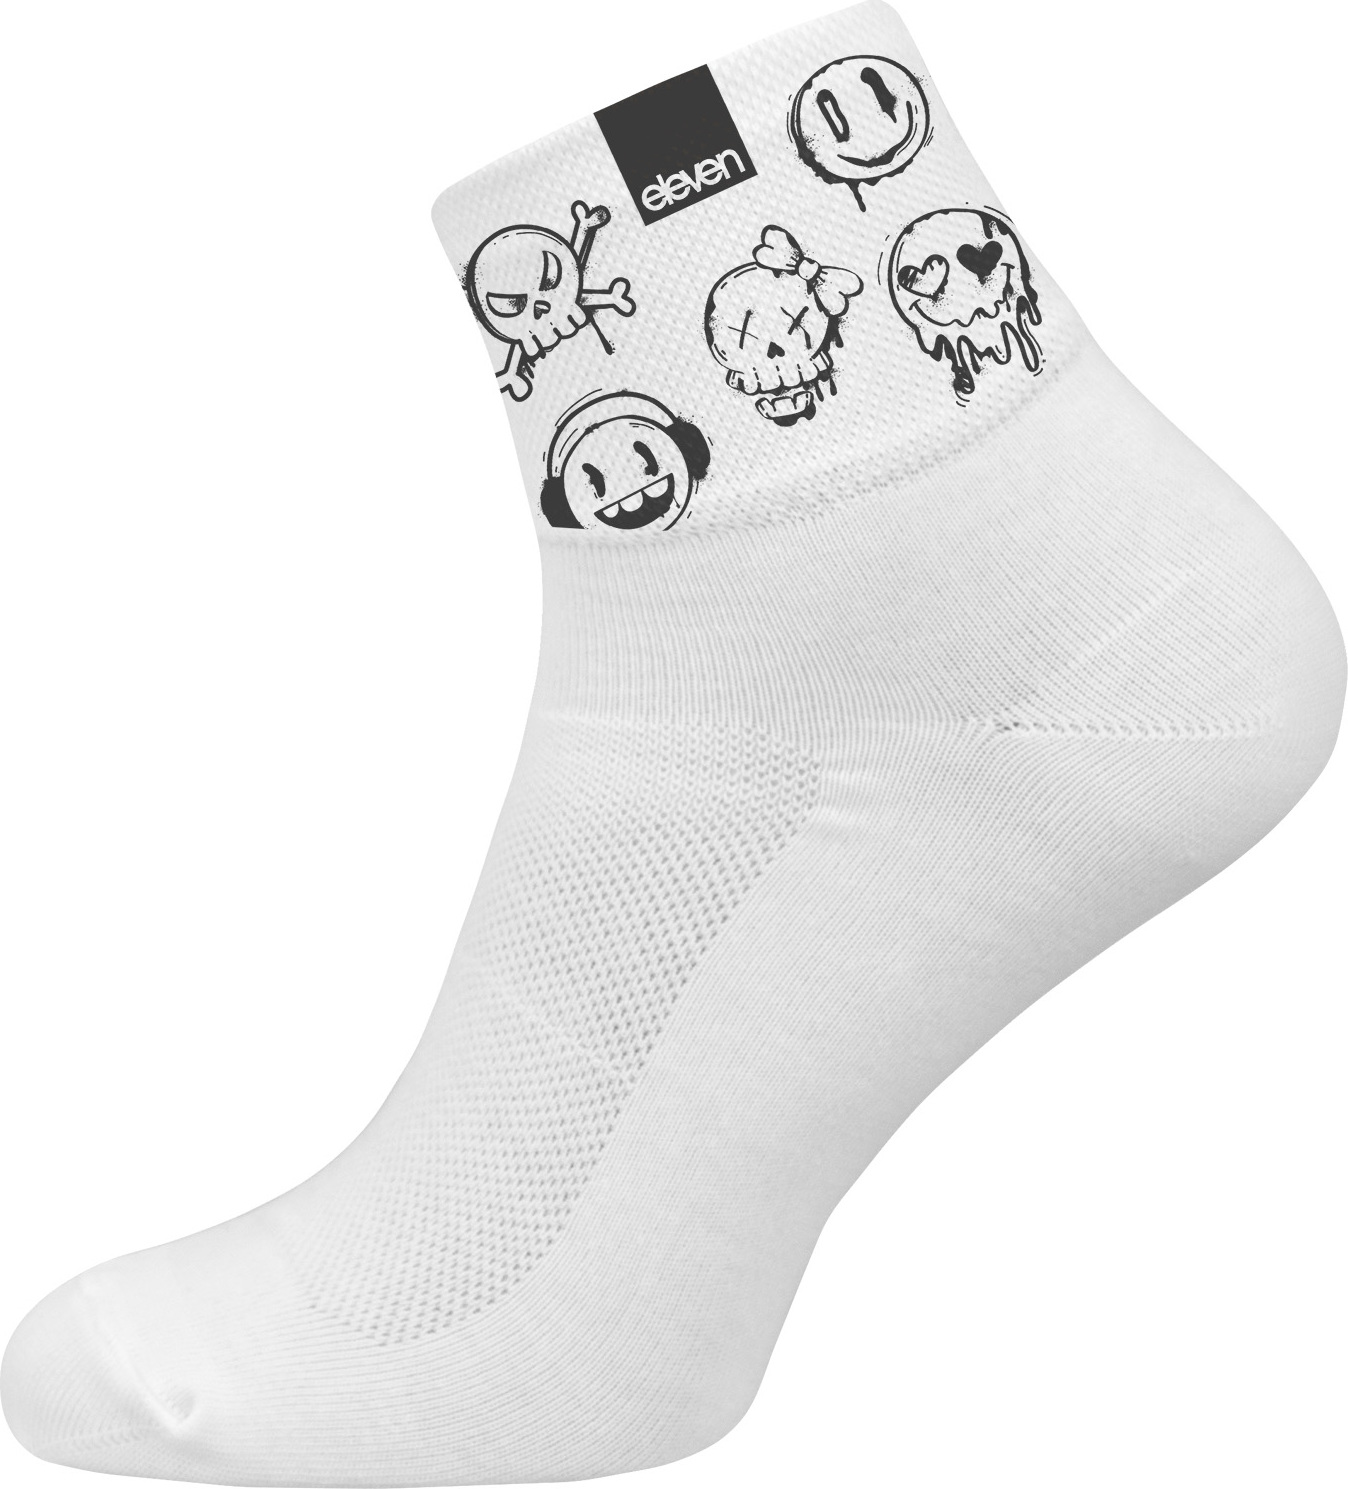 Ponožky ELEVEN Huba Skullies bílé Velikost: L (42-44)